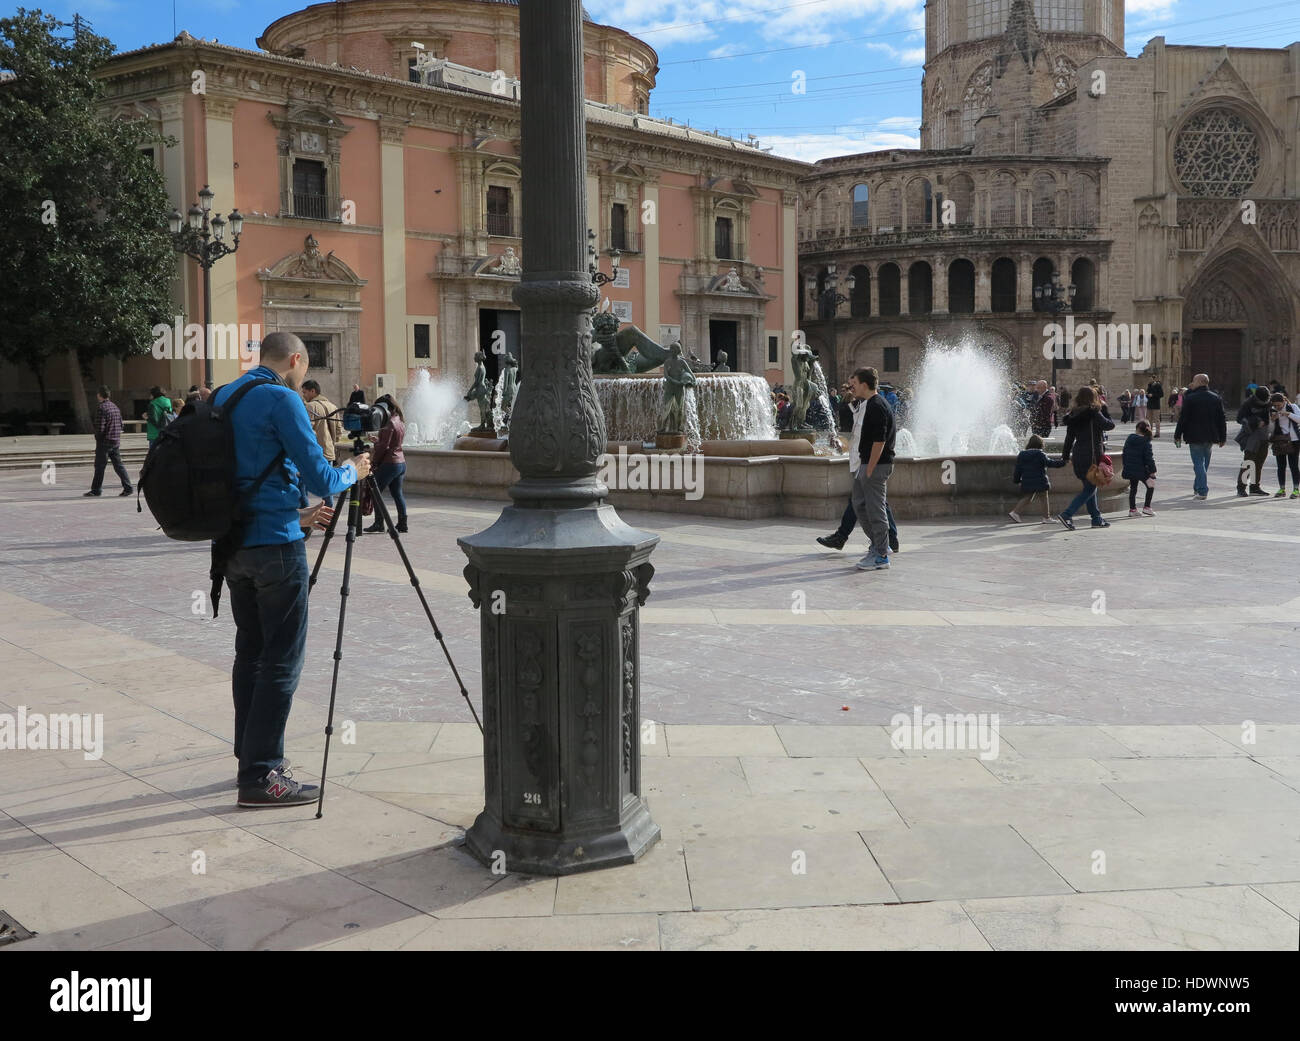 Fotografo che ha istituito un treppiede e una macchina fotografica per fotografare i turisti alla Fontana Turia in Plaza de la Virgen, Valencia, Spagna Foto Stock